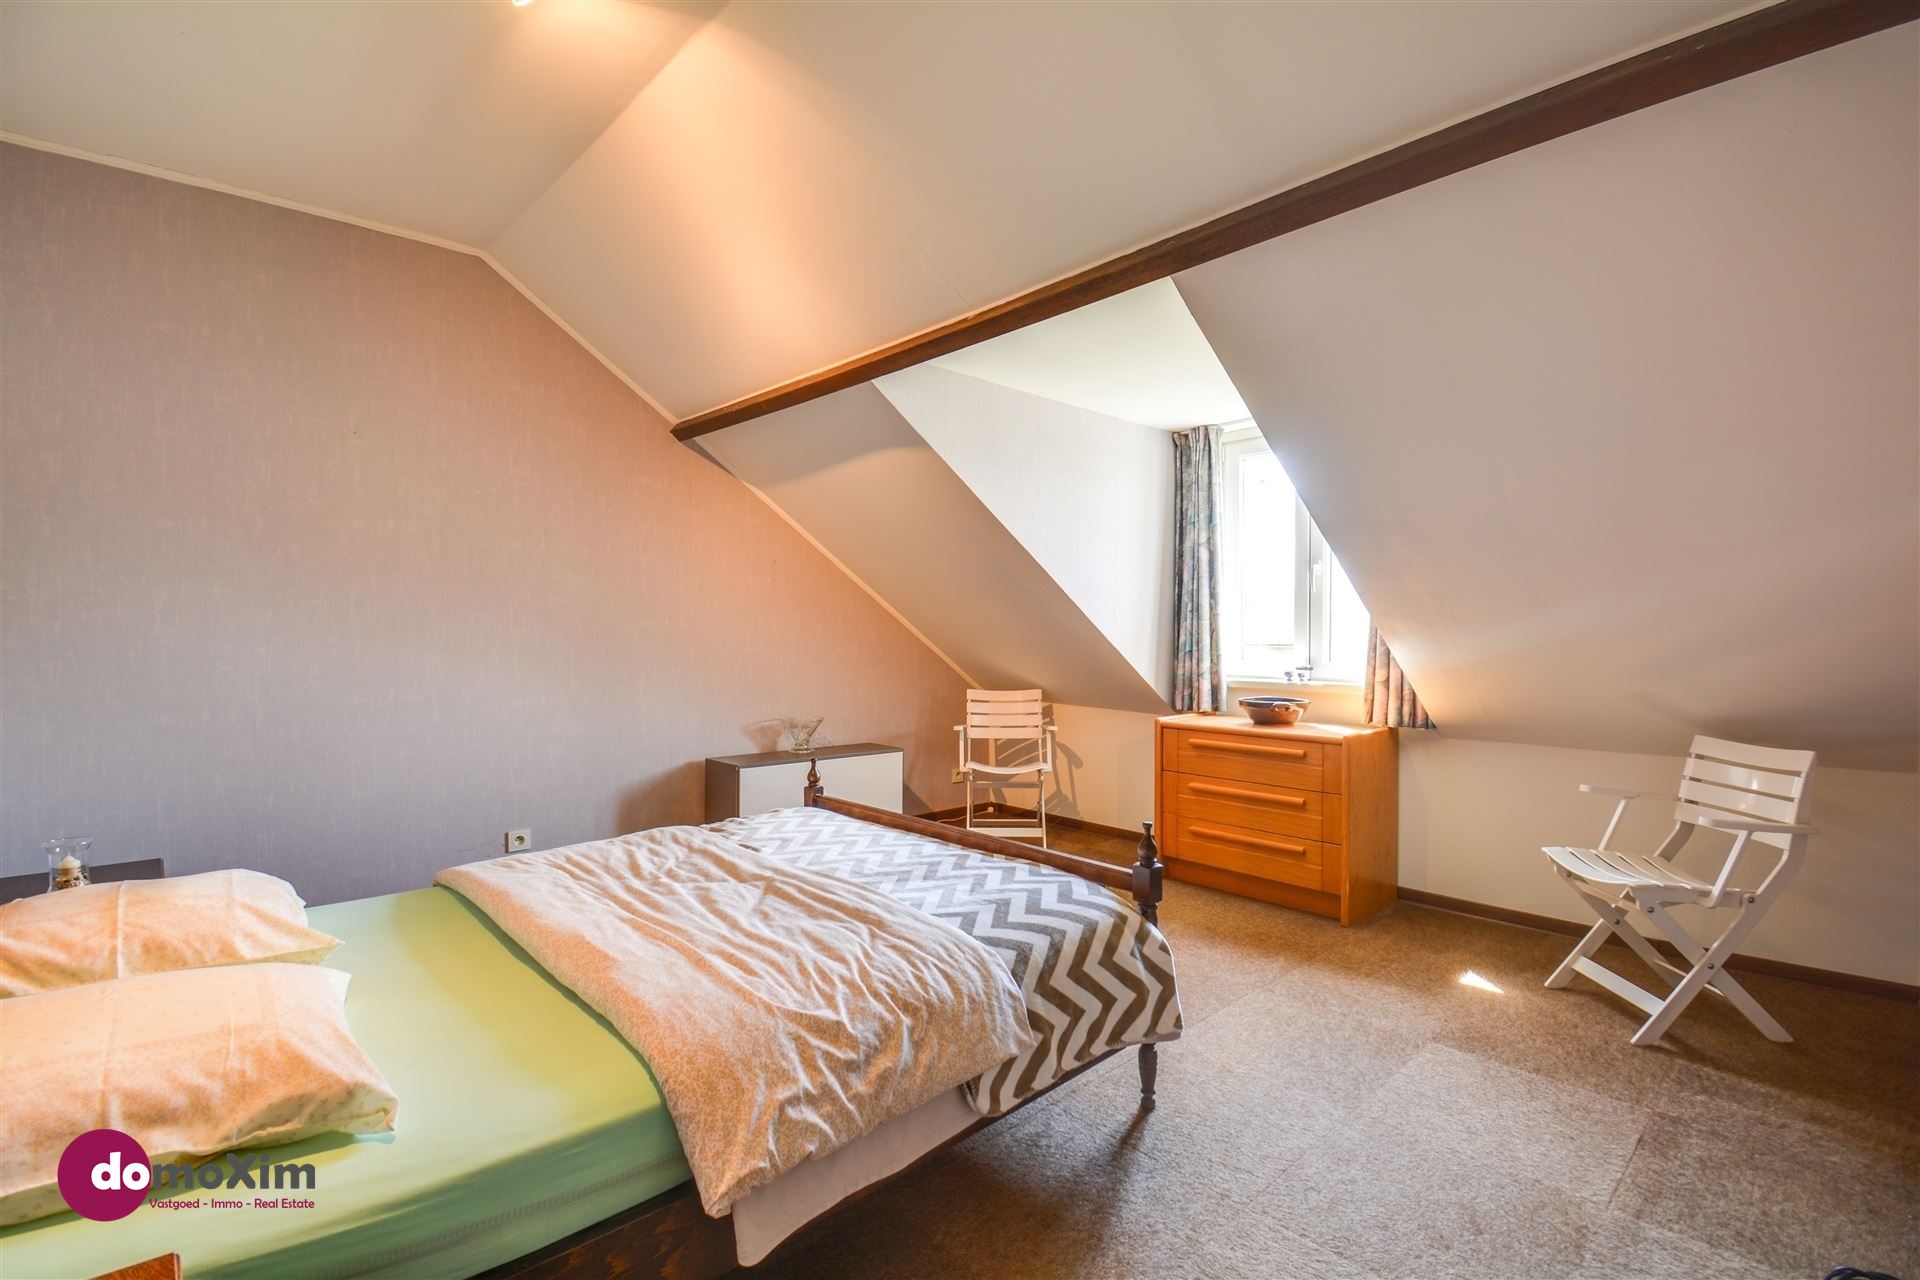 VERKOCHT BINNEN DE MAAND - Karaktervolle, gerenoveerde woning met 5 slaapkamers in Boortmeerbeek foto 18